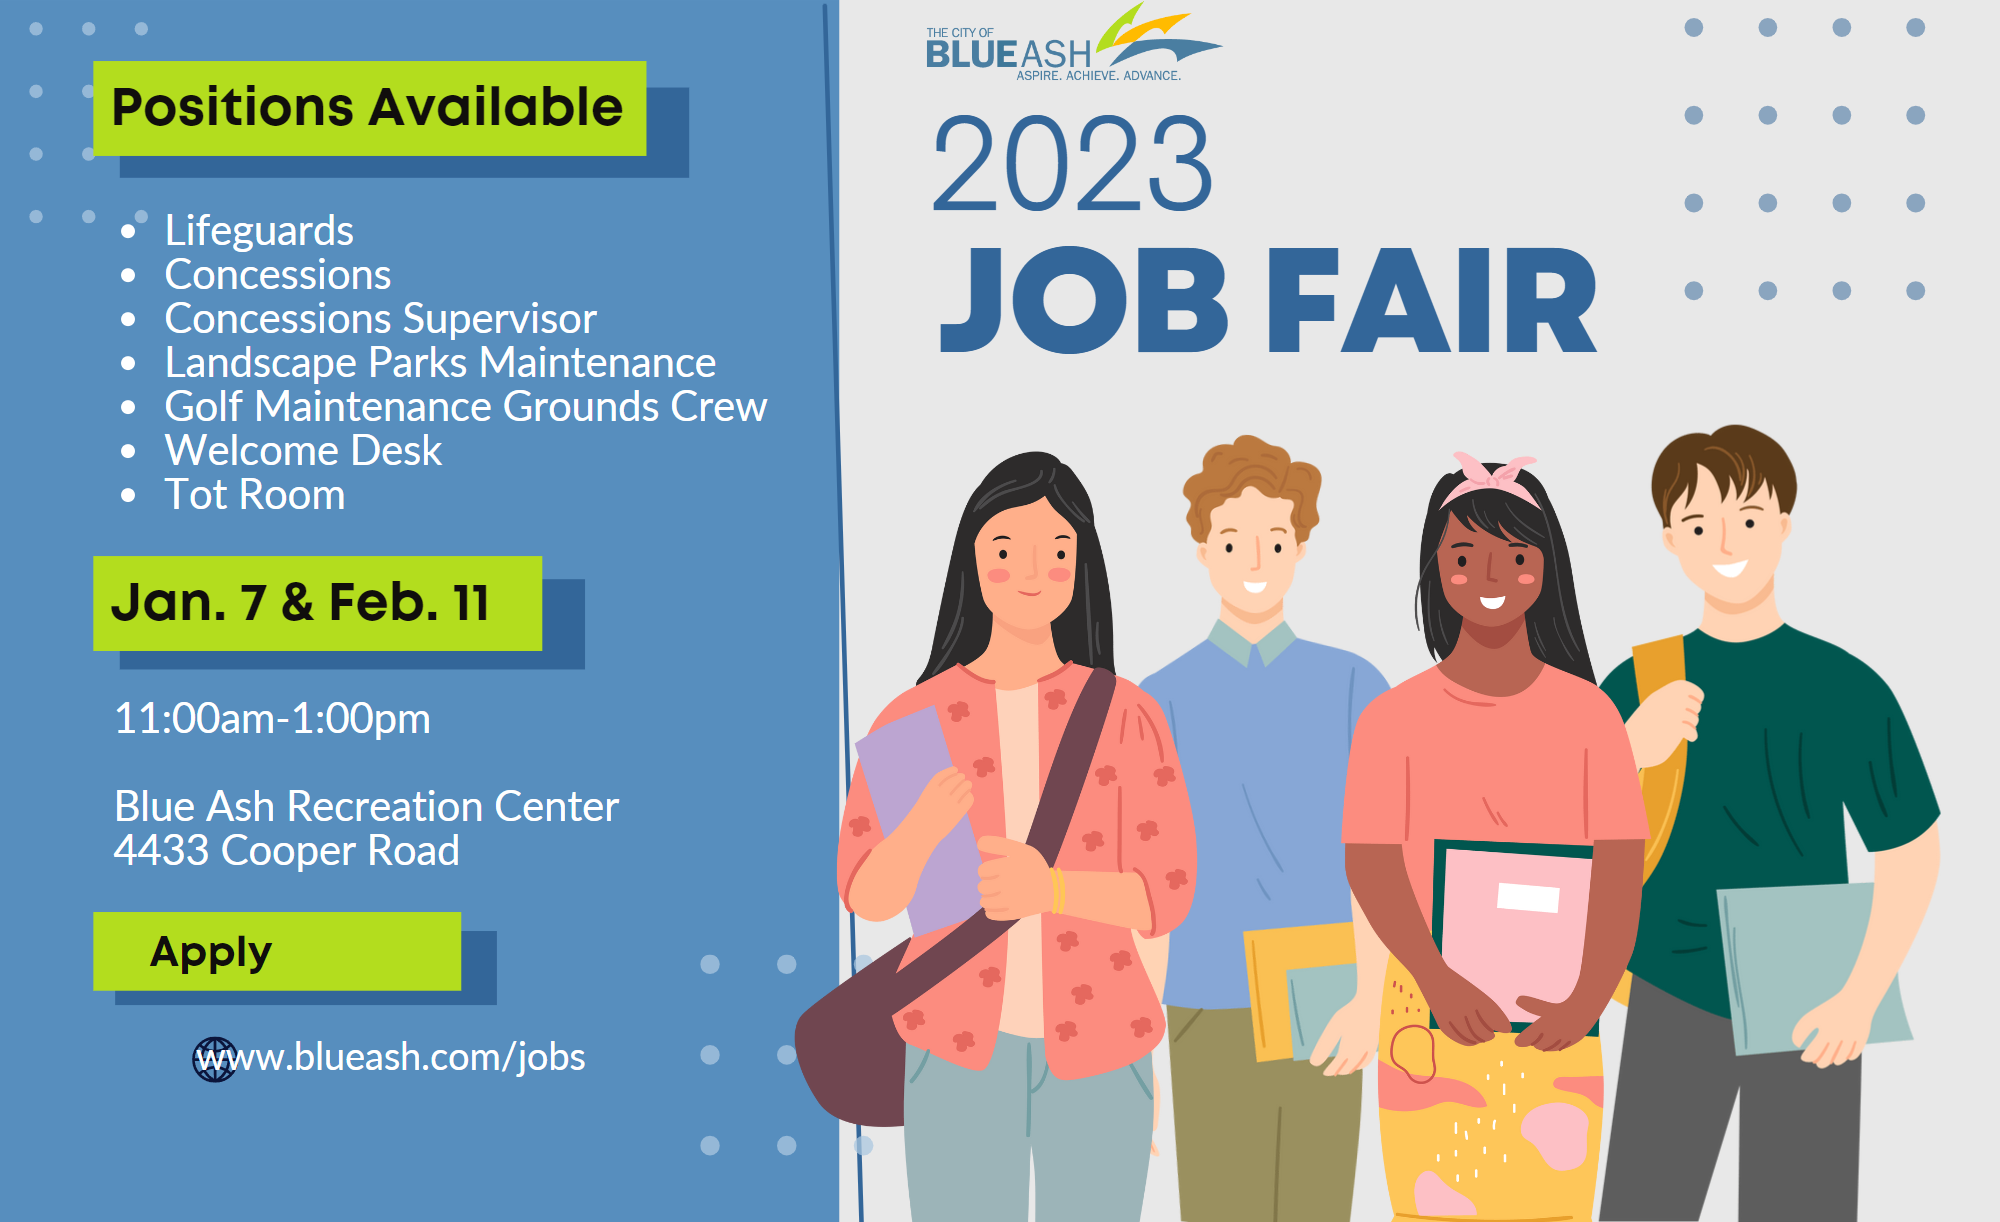 2023 Job Fair - Hiring updated